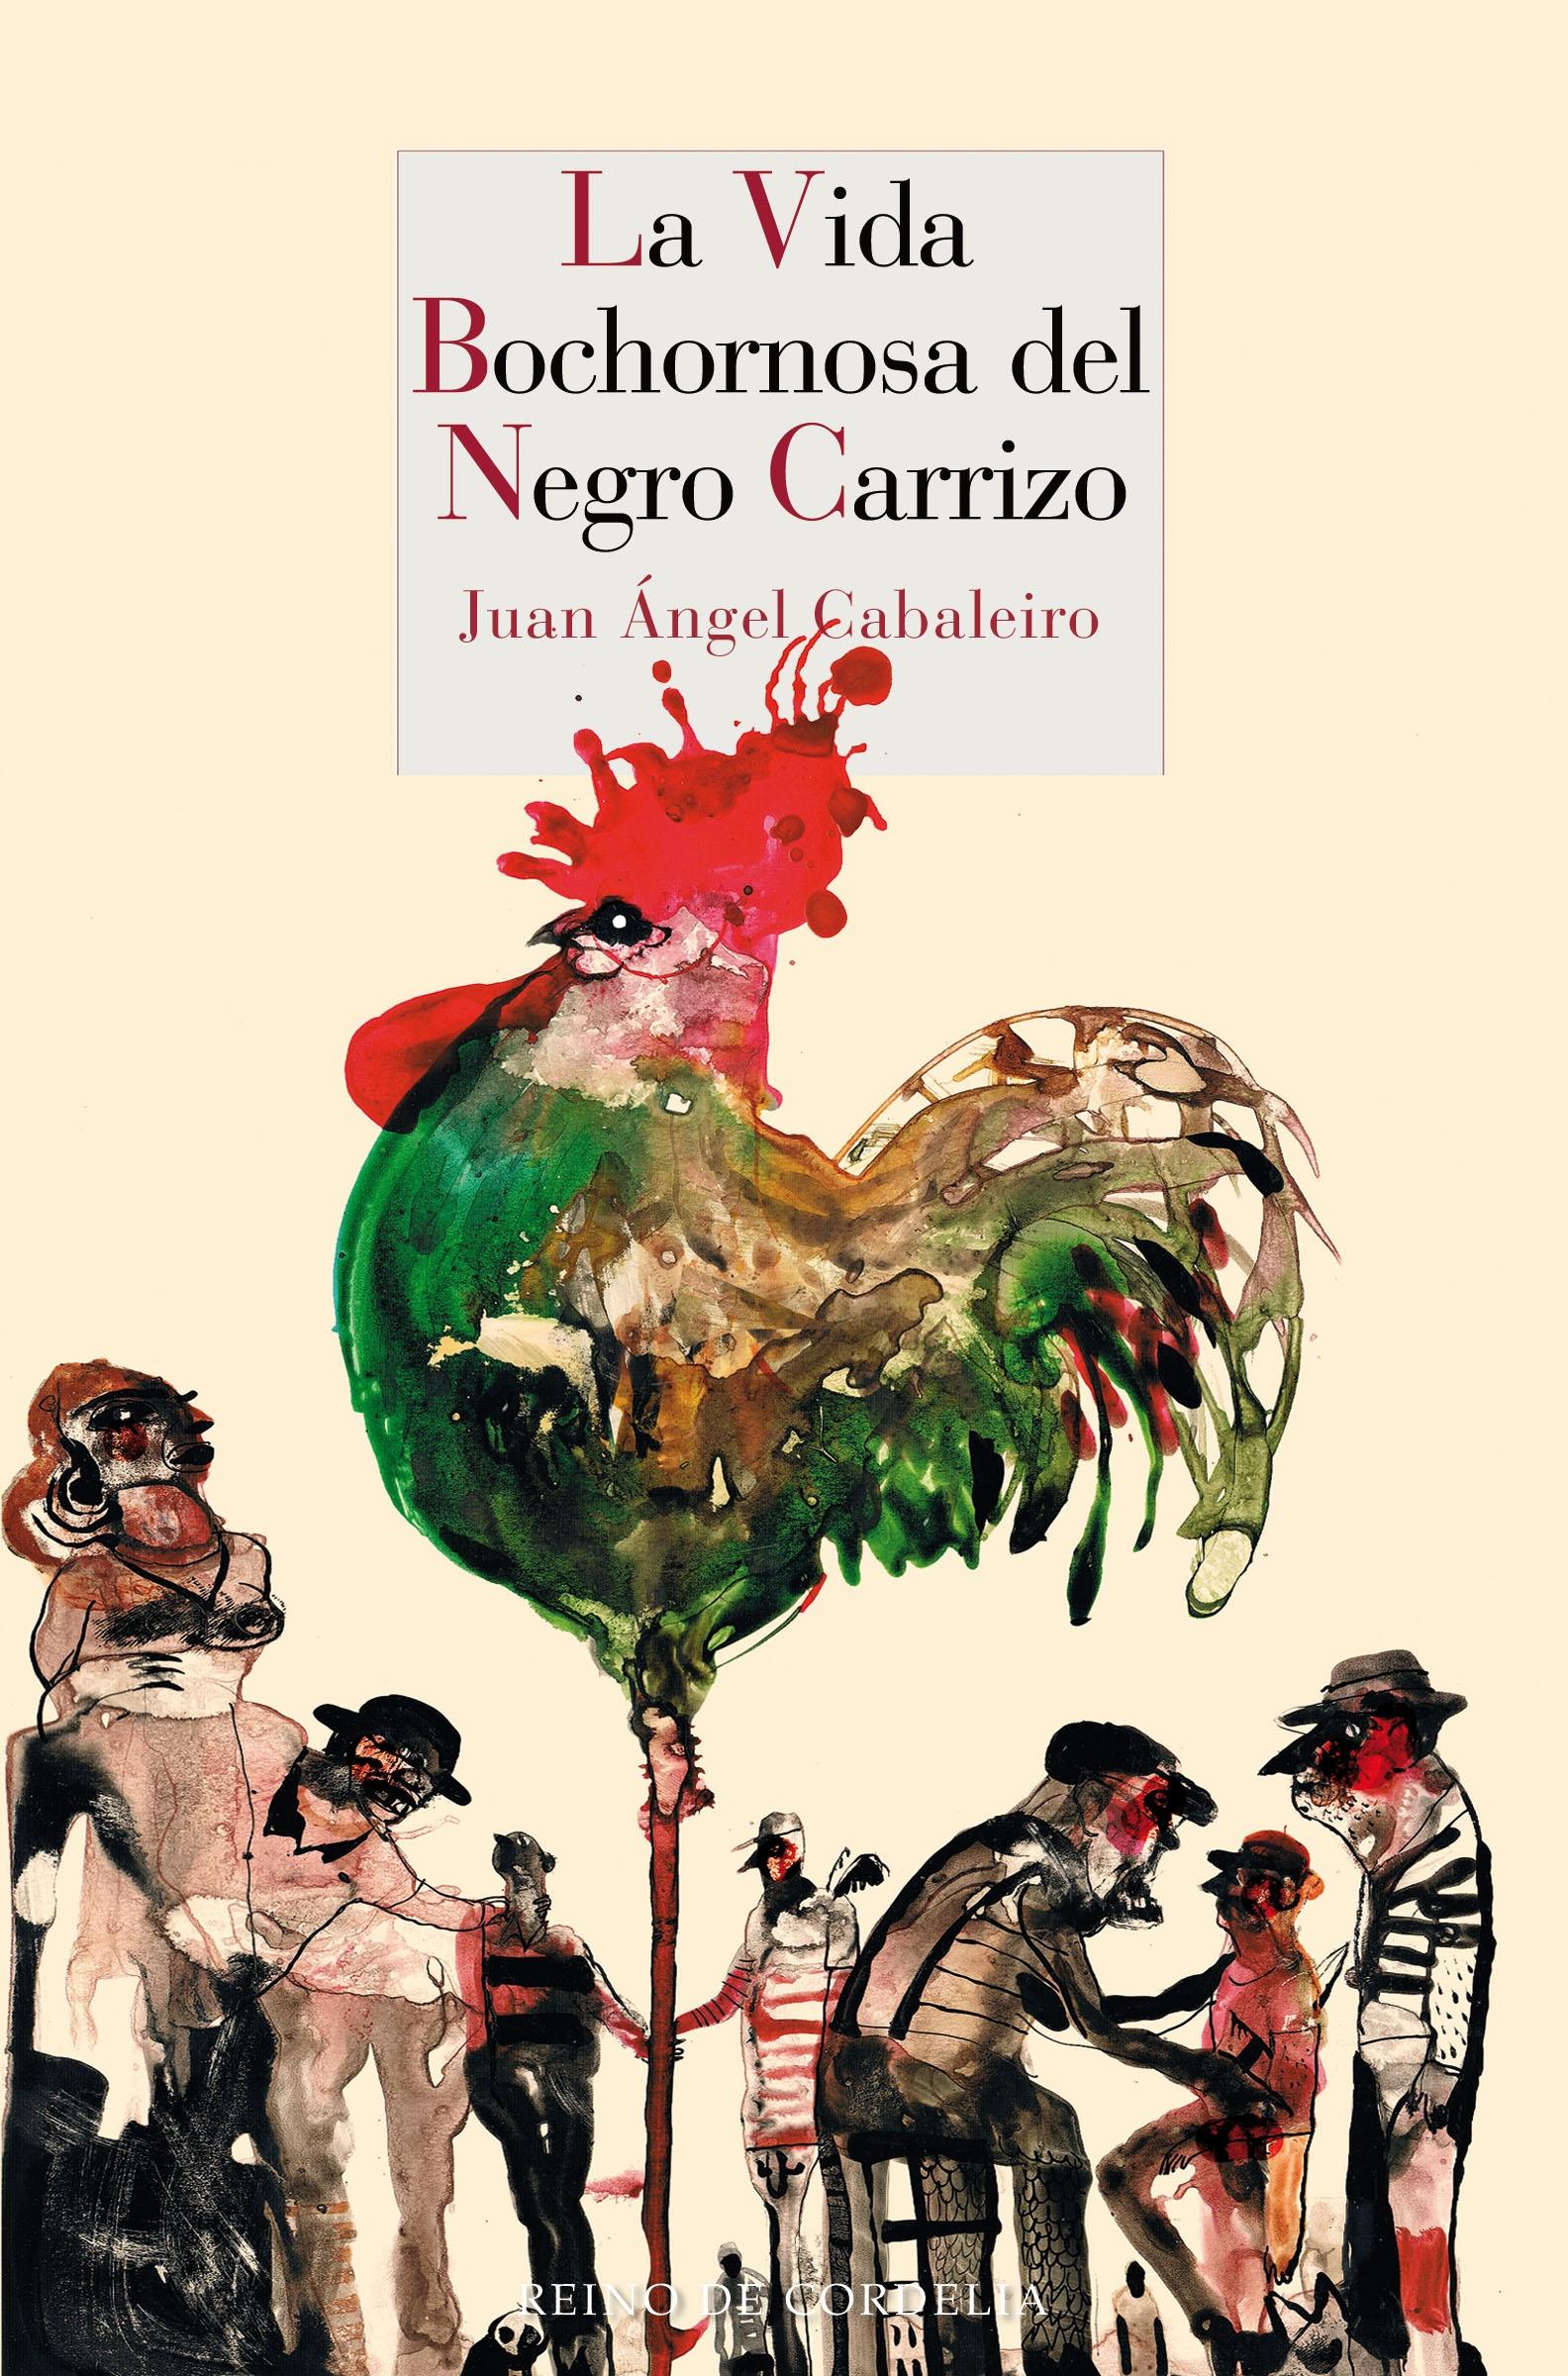 La Vida Bochornosa del Negro Carrizo "Premio Internacional de Novela Corta  Giralda  2015". 